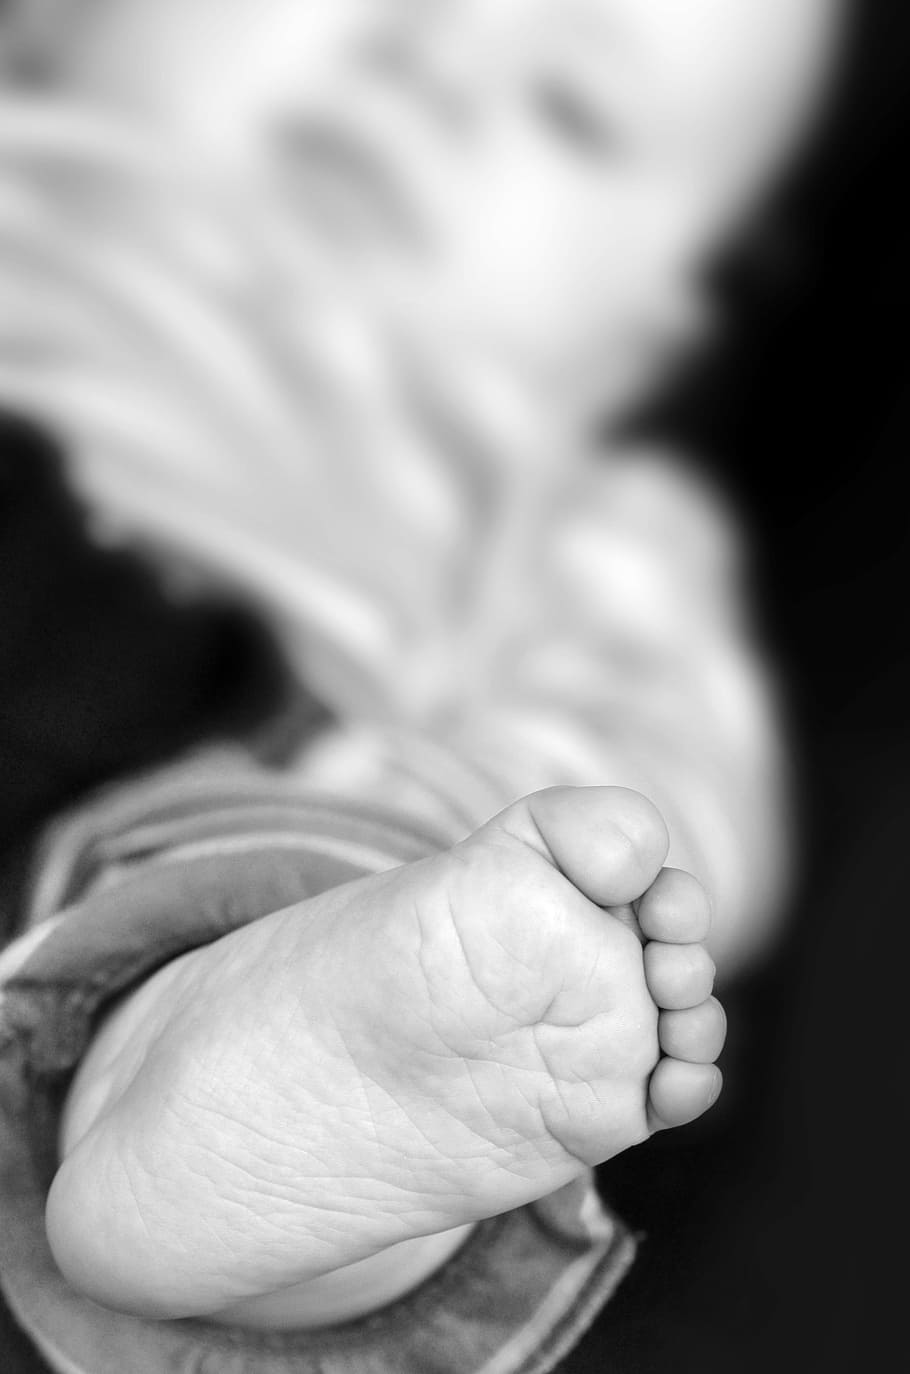 kaki, bayi, sepuluh, kaki bayi, baru lahir, kecil, dilahirkan kembali, manusia, bagian tubuh, anak